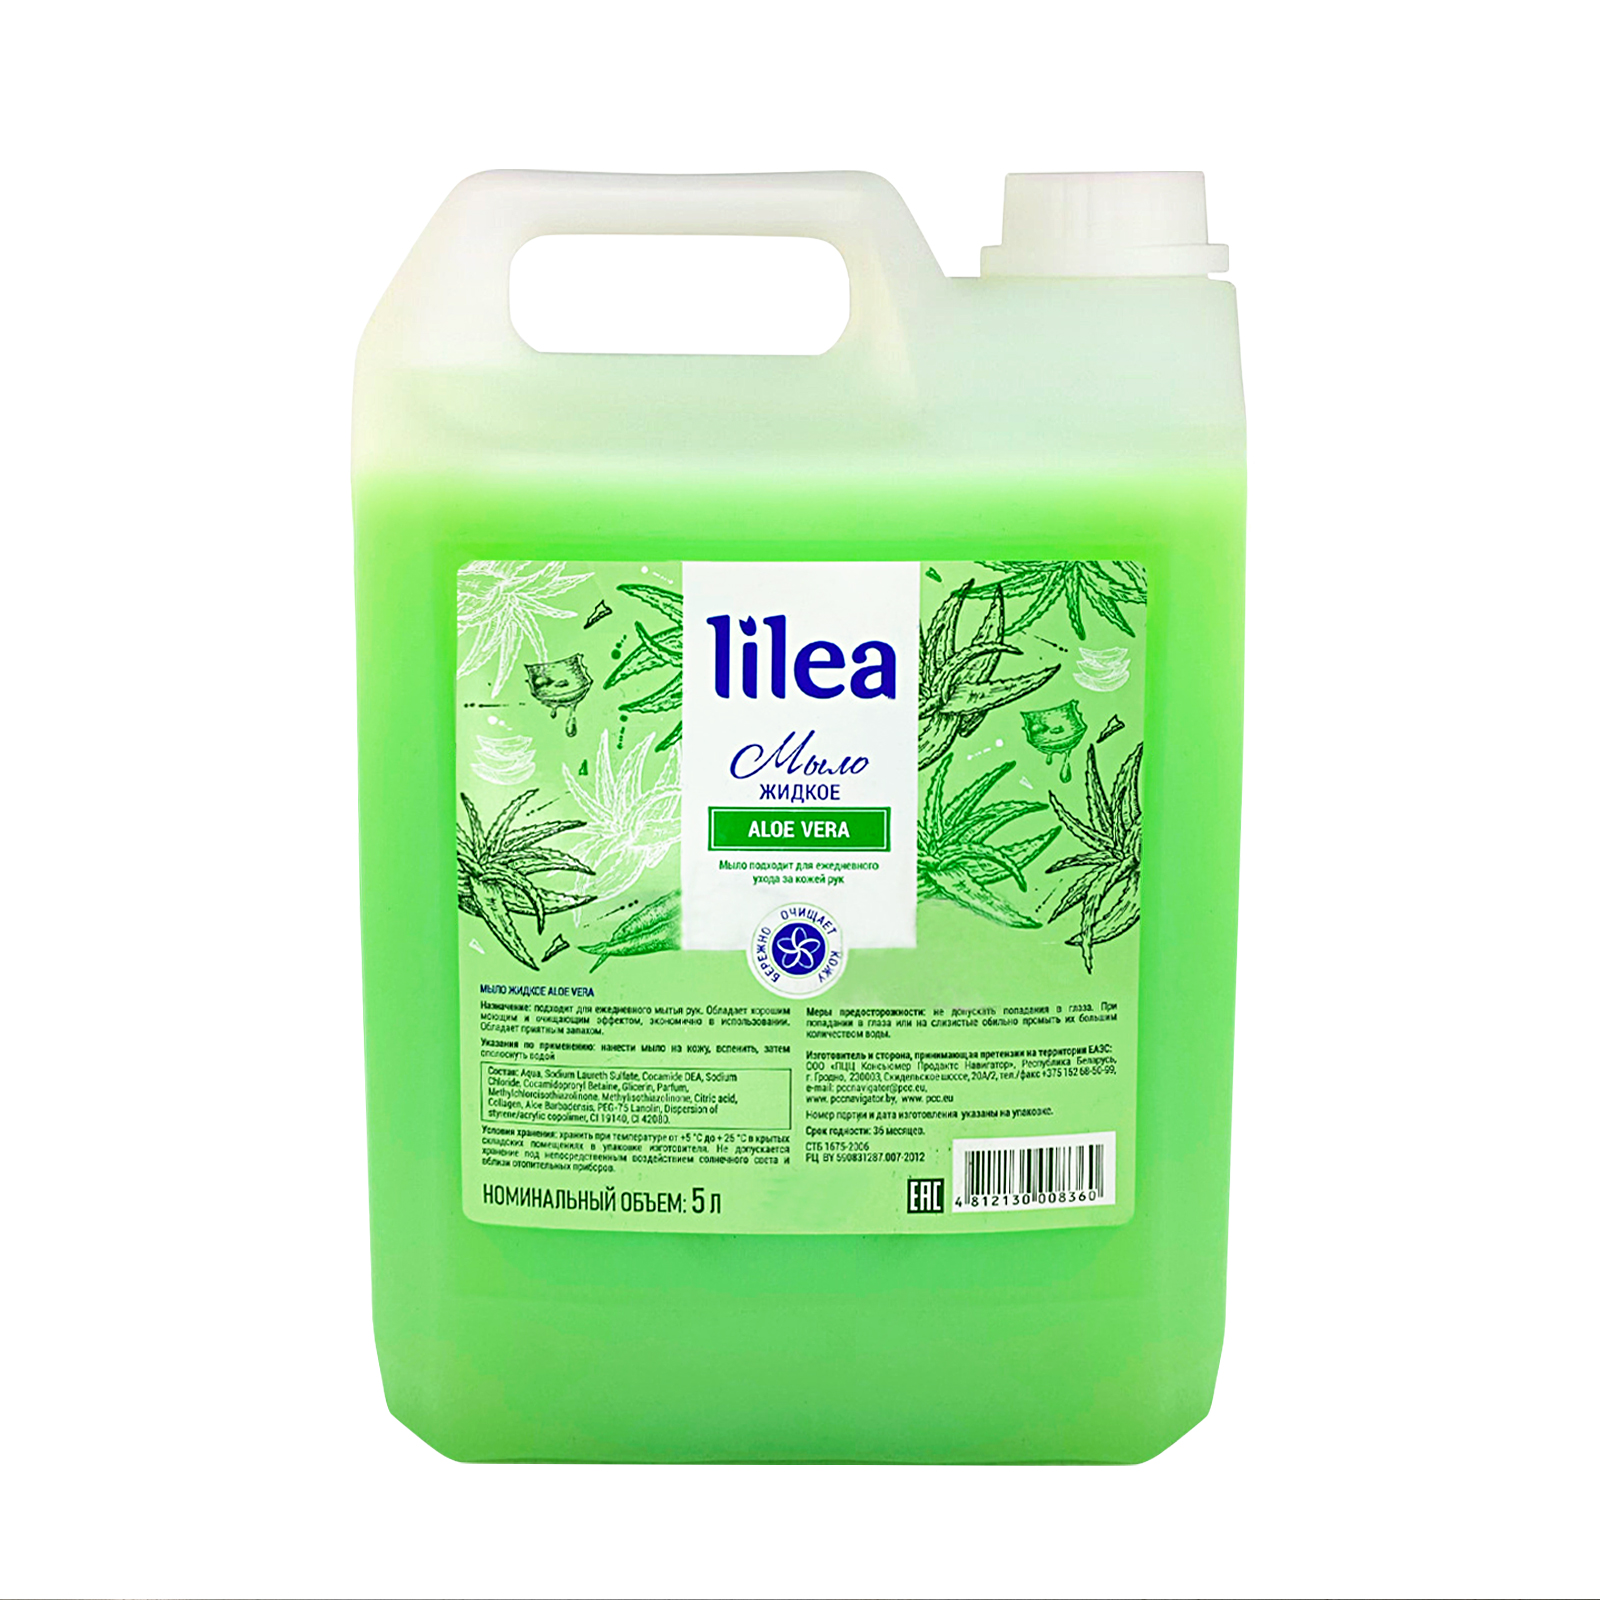 Жидкое мыло для рук Aloe Vera Lilea для взрослых и детей, туалетное, косметическое 5 л consly мыло увлажняющее с экстрактом алоэ aloe cleansing soap